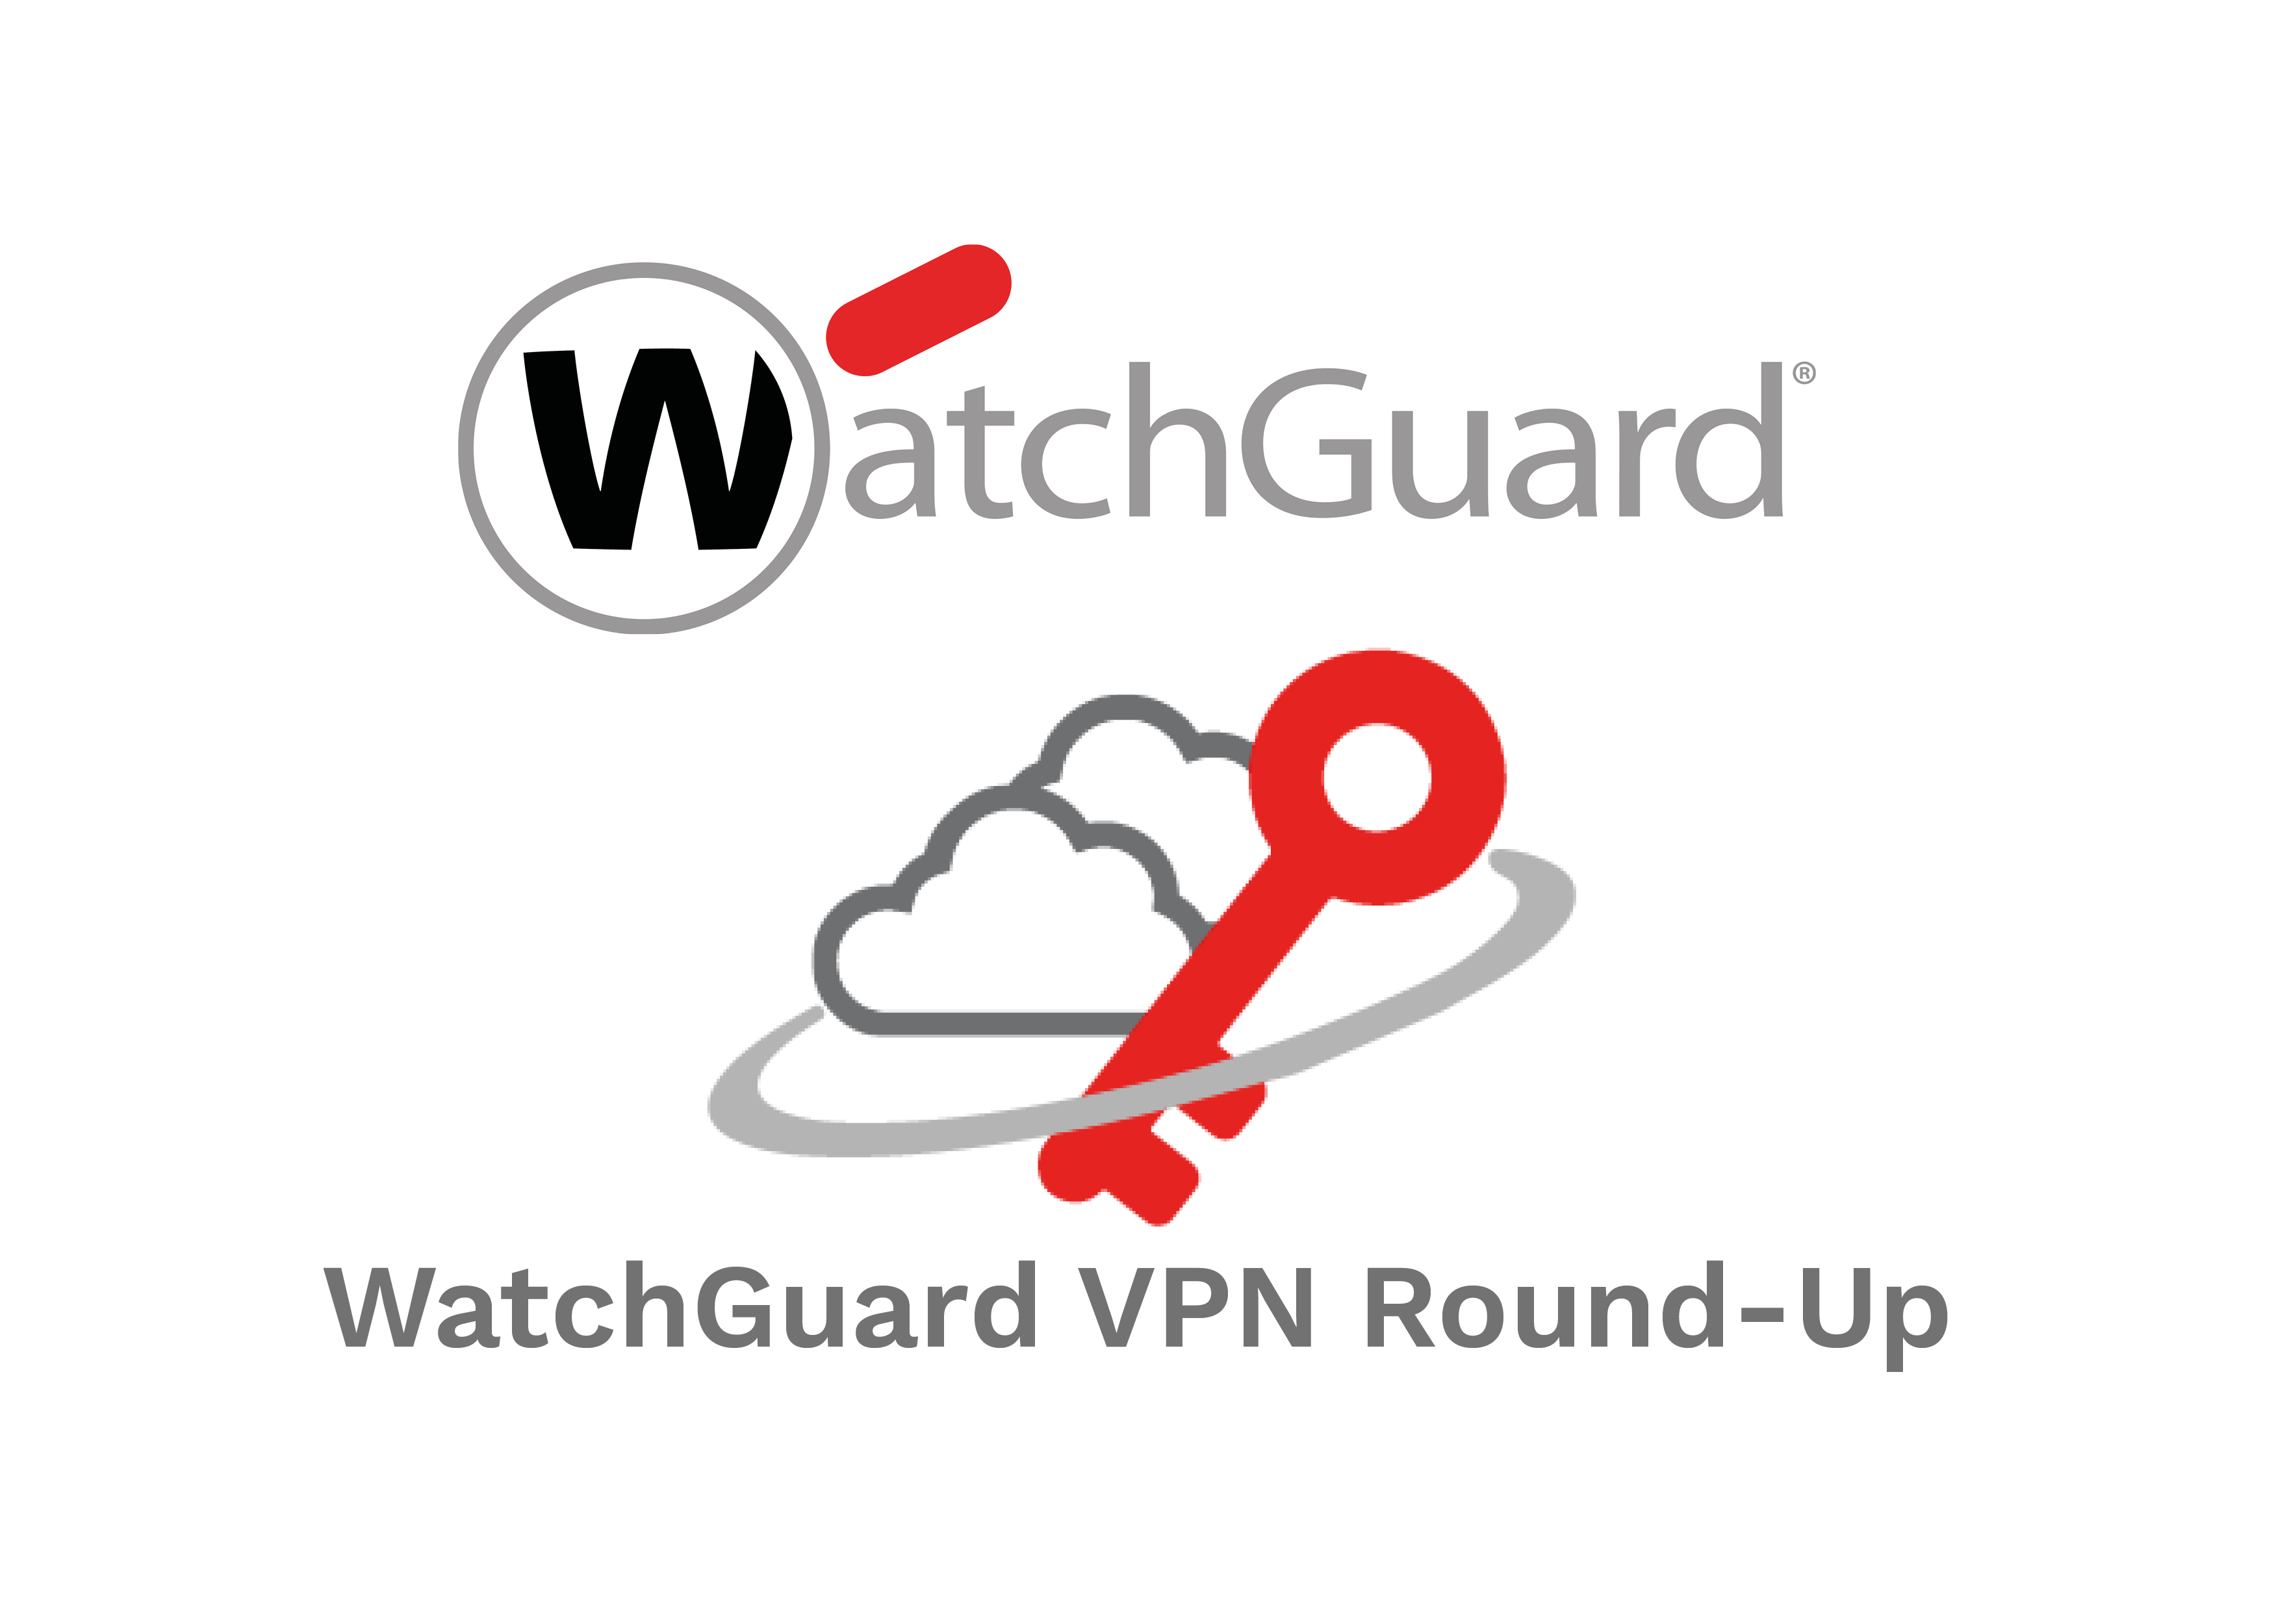 watchguard mobile vpn download client